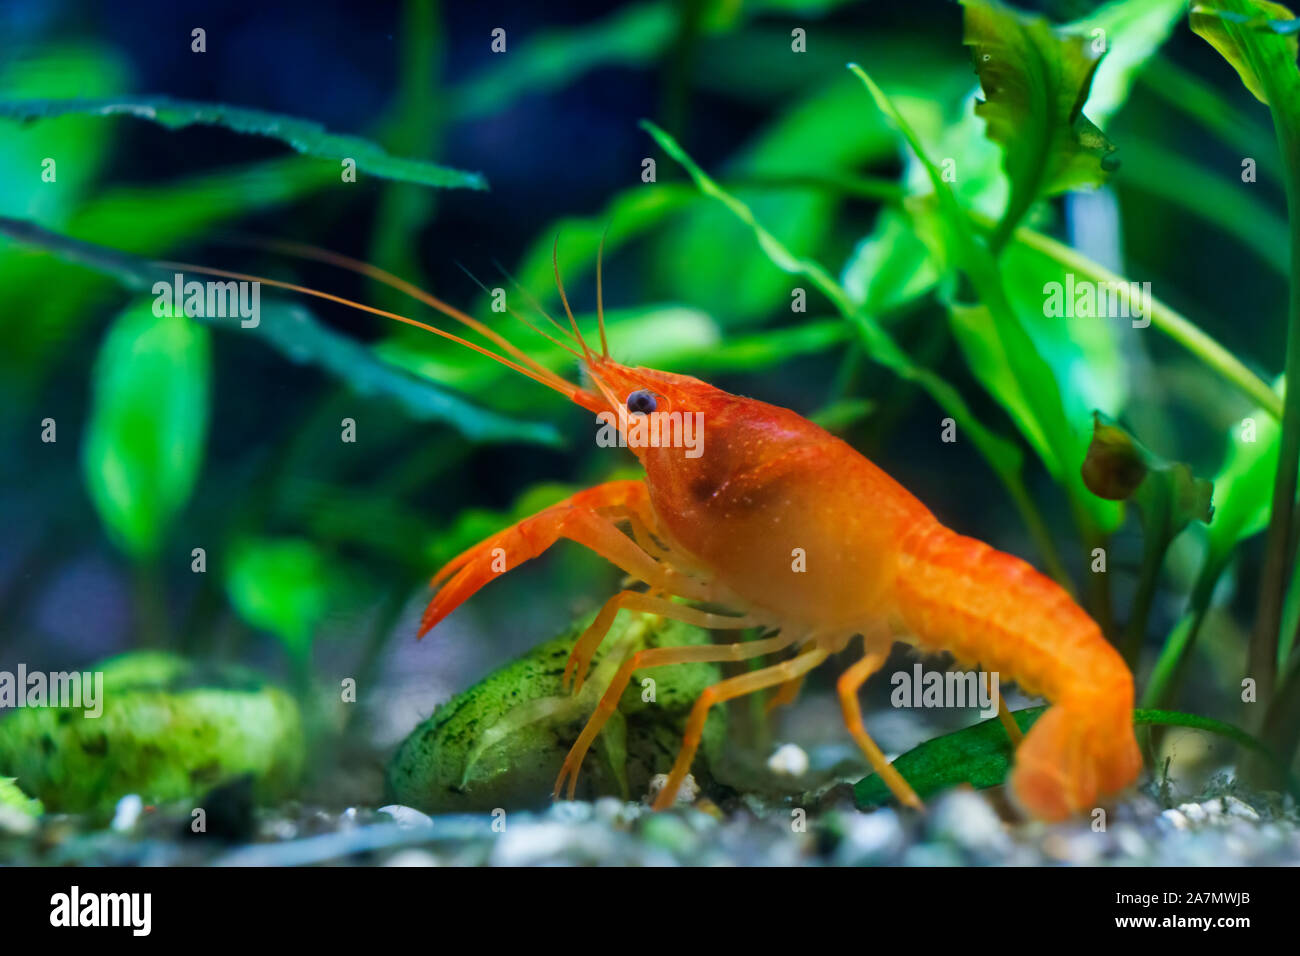 Mexican Orange crayfish Stock Photo